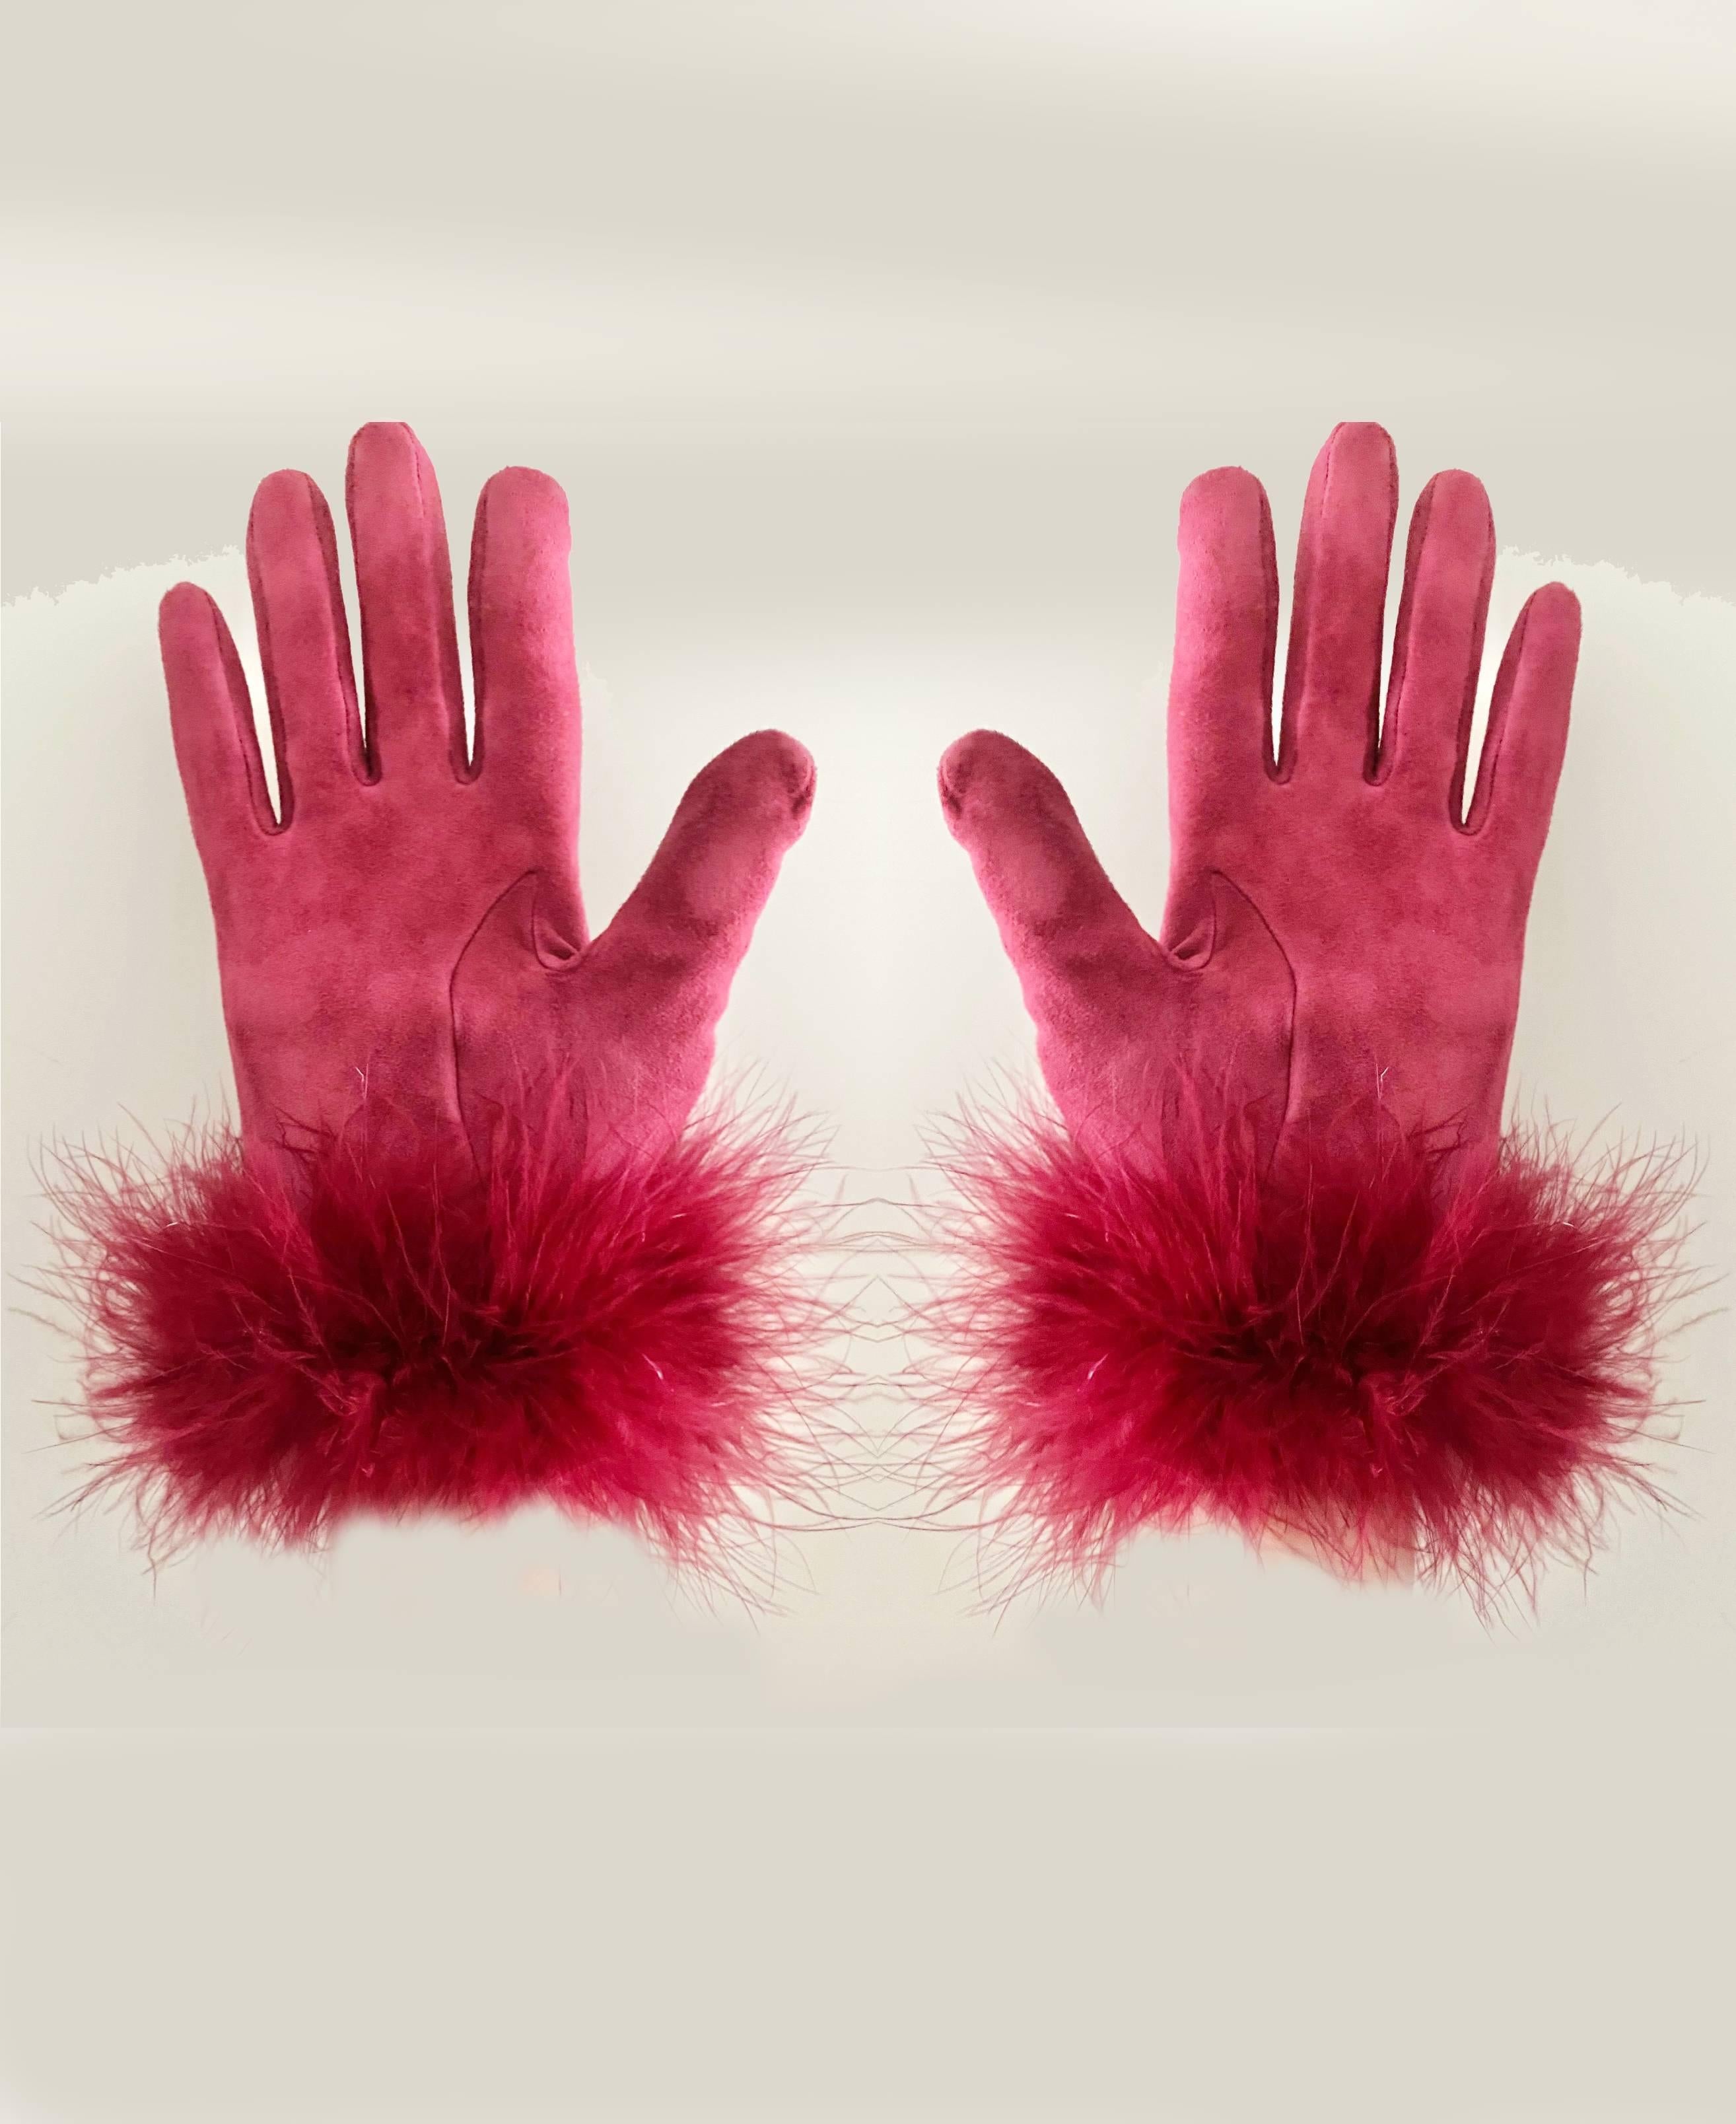 Christian Dior Handschuhe aus erdbeerrotem Wildleder mit gefiederten Fransen, Innenfutter aus Stoff, handgelenklang, leichtgewichtig 

Größe:  S    
Zustand: 1980er Jahre / sehr guter Jahrgang 